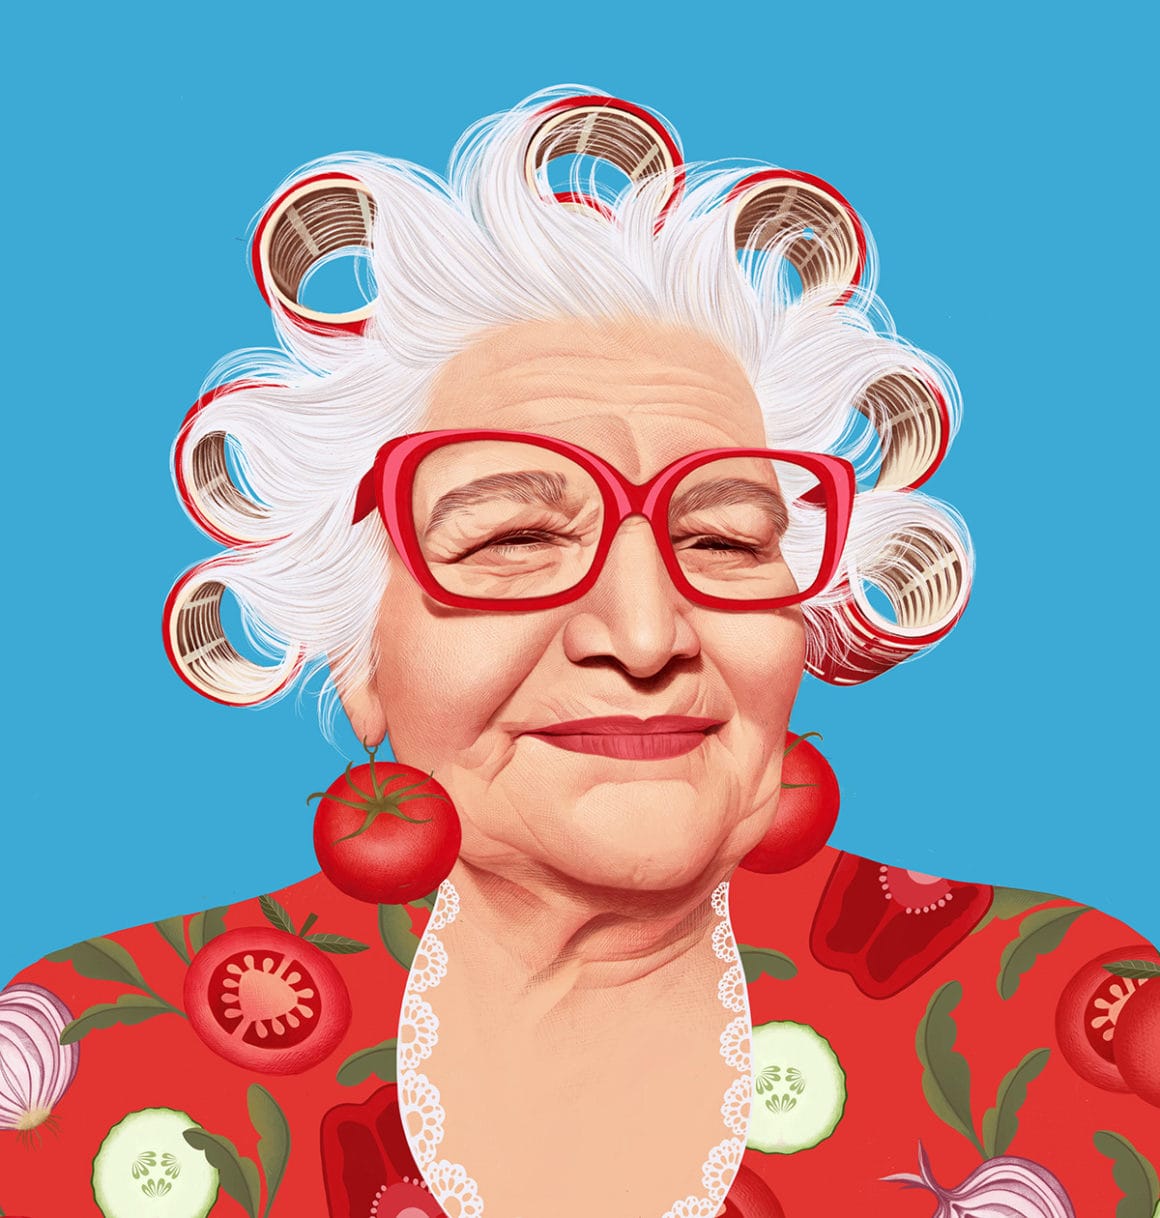 Illustration d'une vieille femme qui a des bigoudis rouges dans les cheveux. Elle porte des boucles d'oreille tomates et des rondelles de légumes sont représentés sur son vêtement rouge.